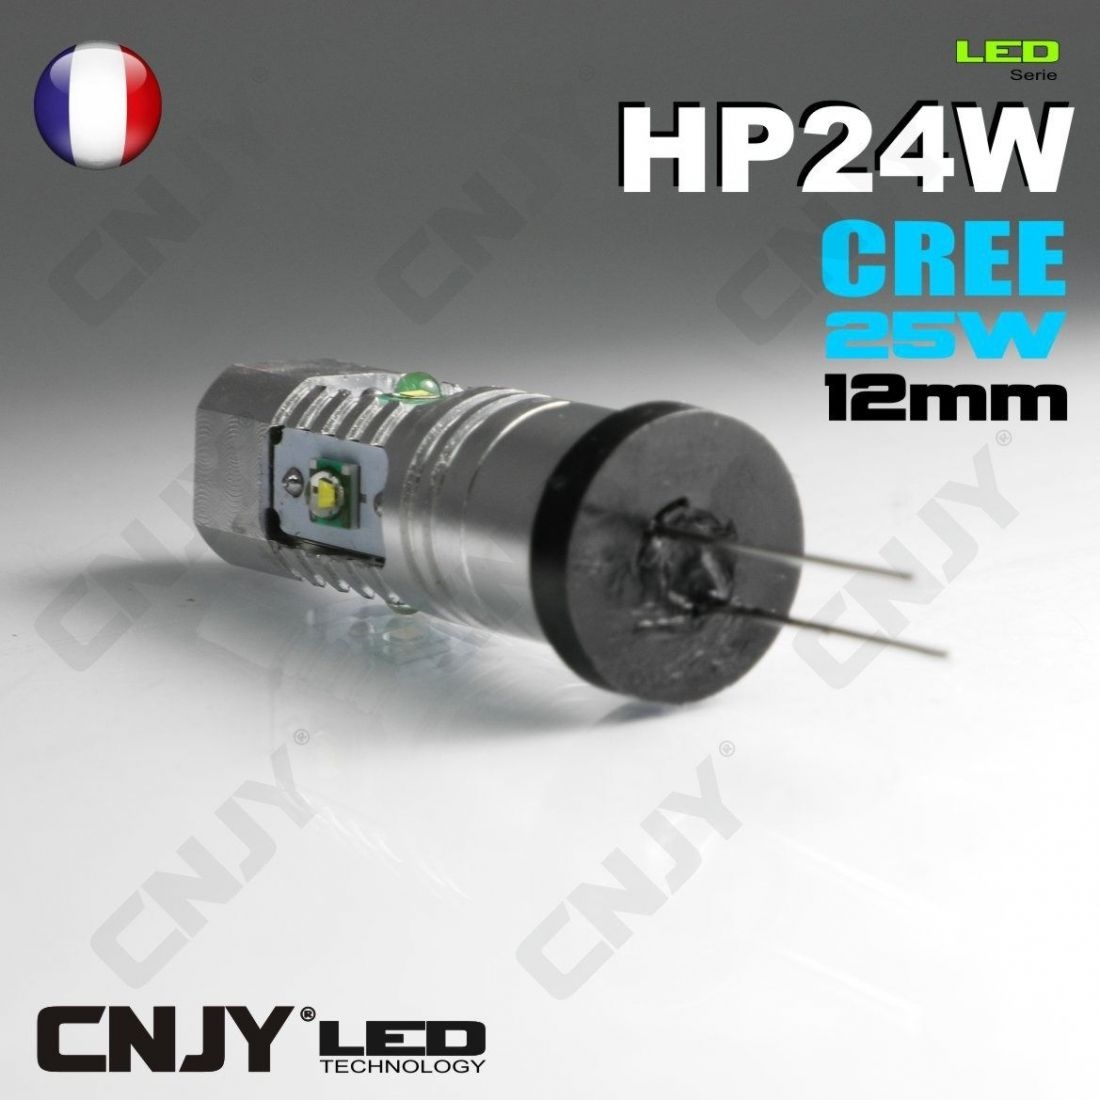 2 AMPOULES CNJY LED HP24W PGU20-4 5200 P15WST CREE 25W FEUX DE JOUR CITROEN C6 